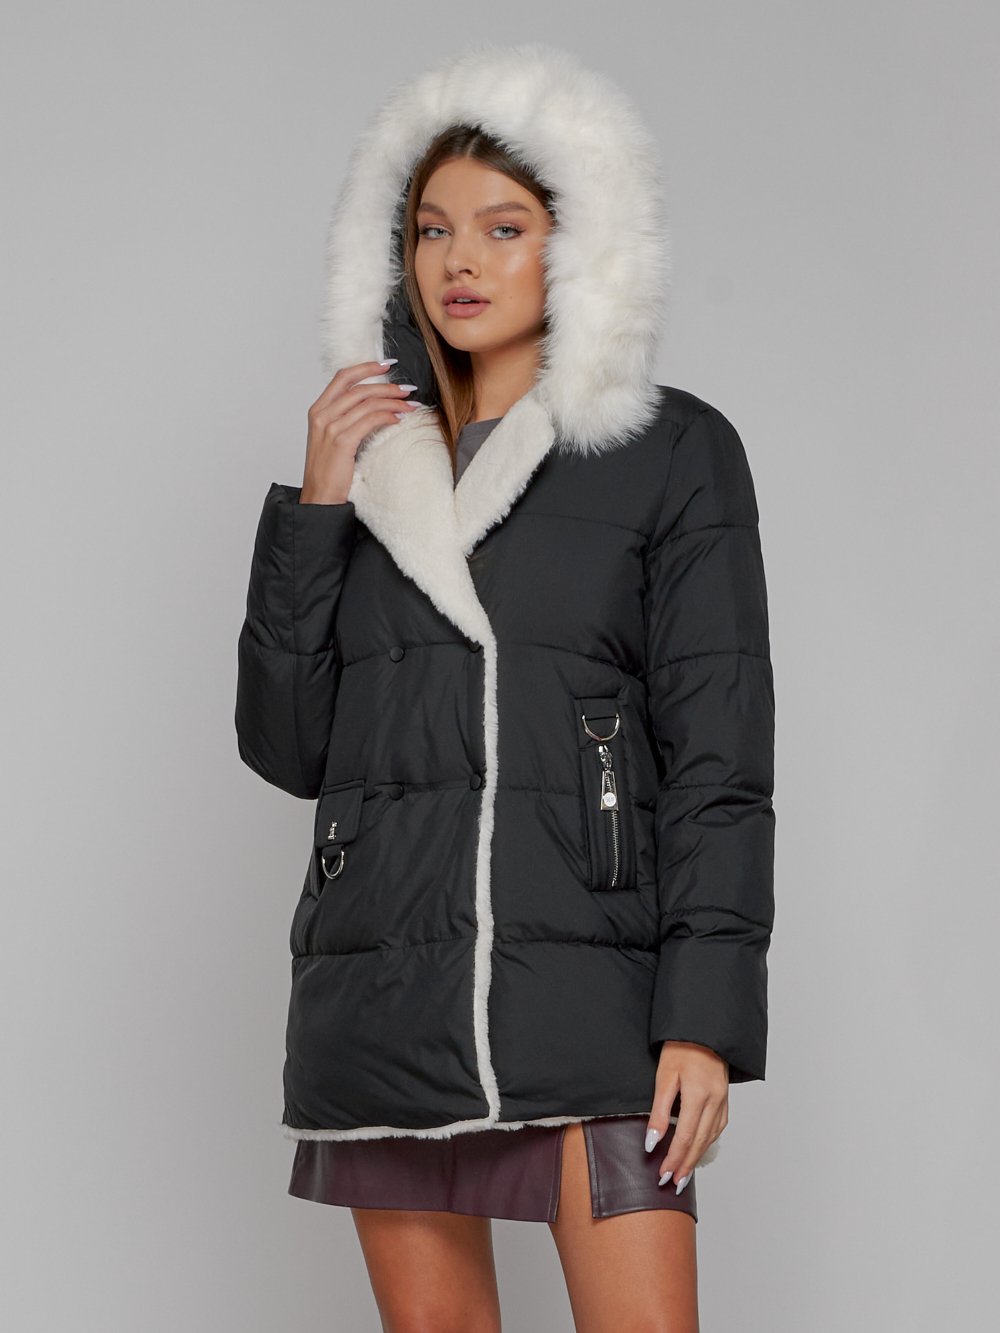 Купить куртку женскую оптом от производителя недорого в Москве 133120Ch 1